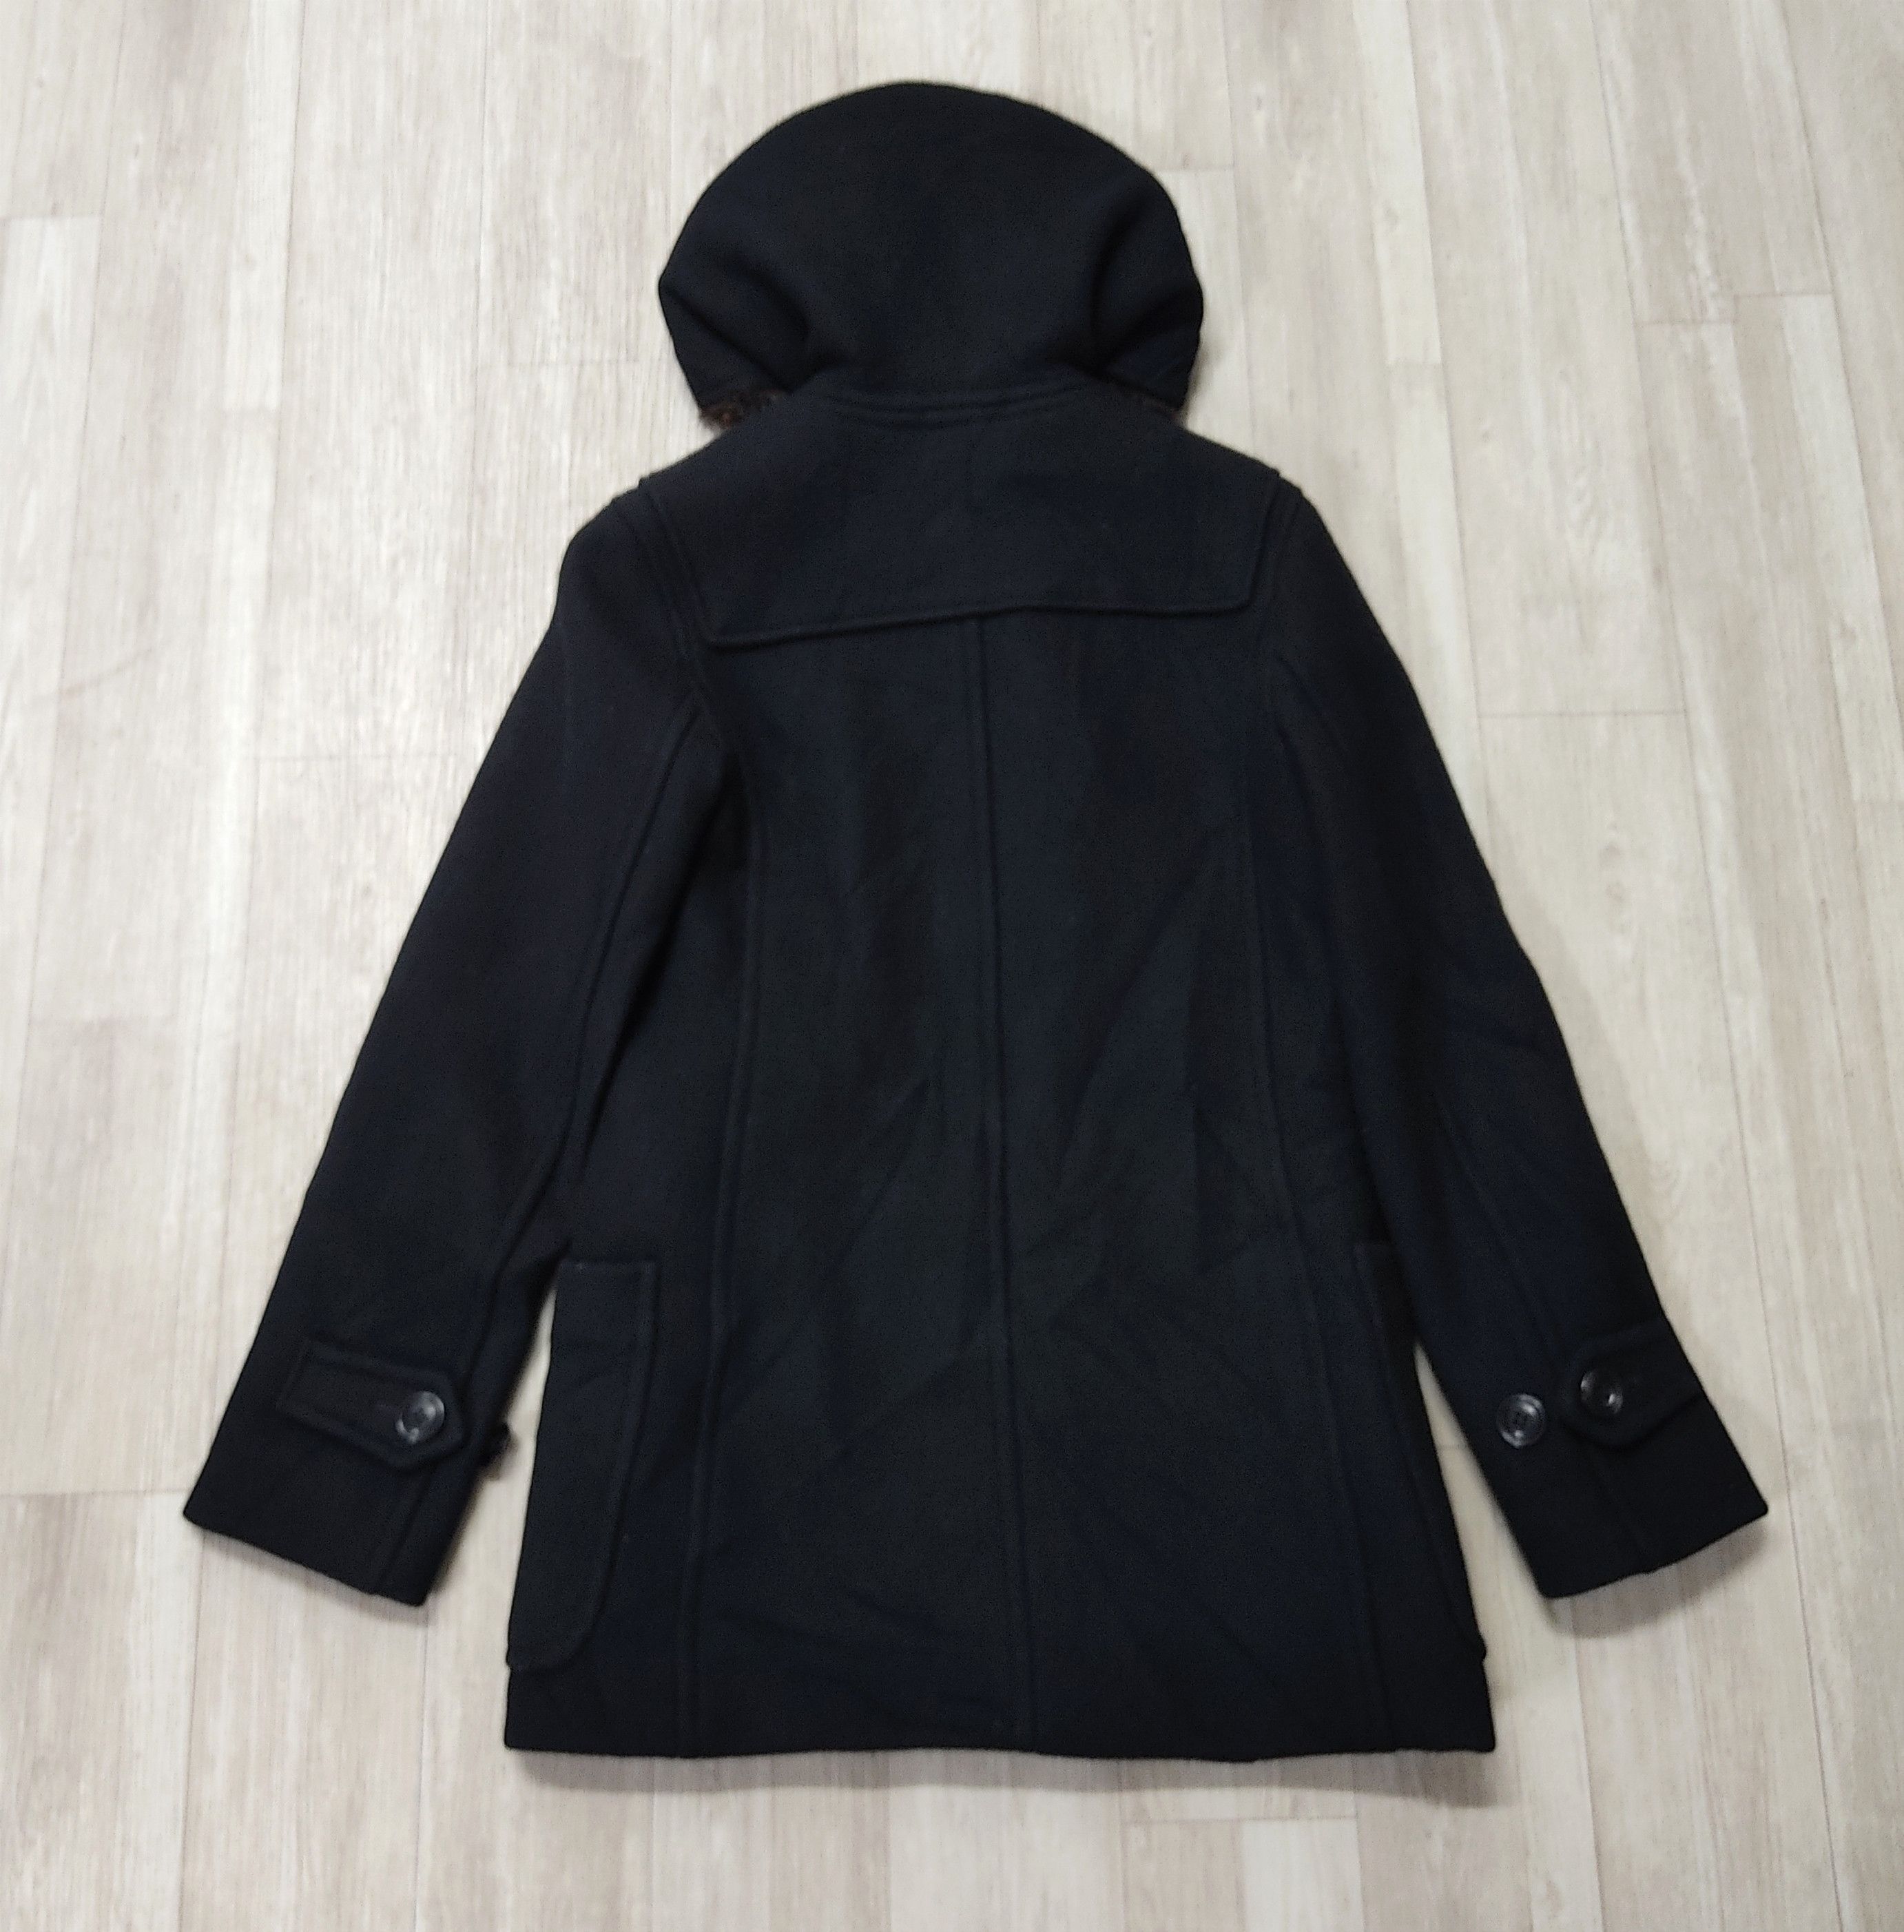 SUNAO KUWAHARA Fur Hooded Wool Duffle Jacket - 12